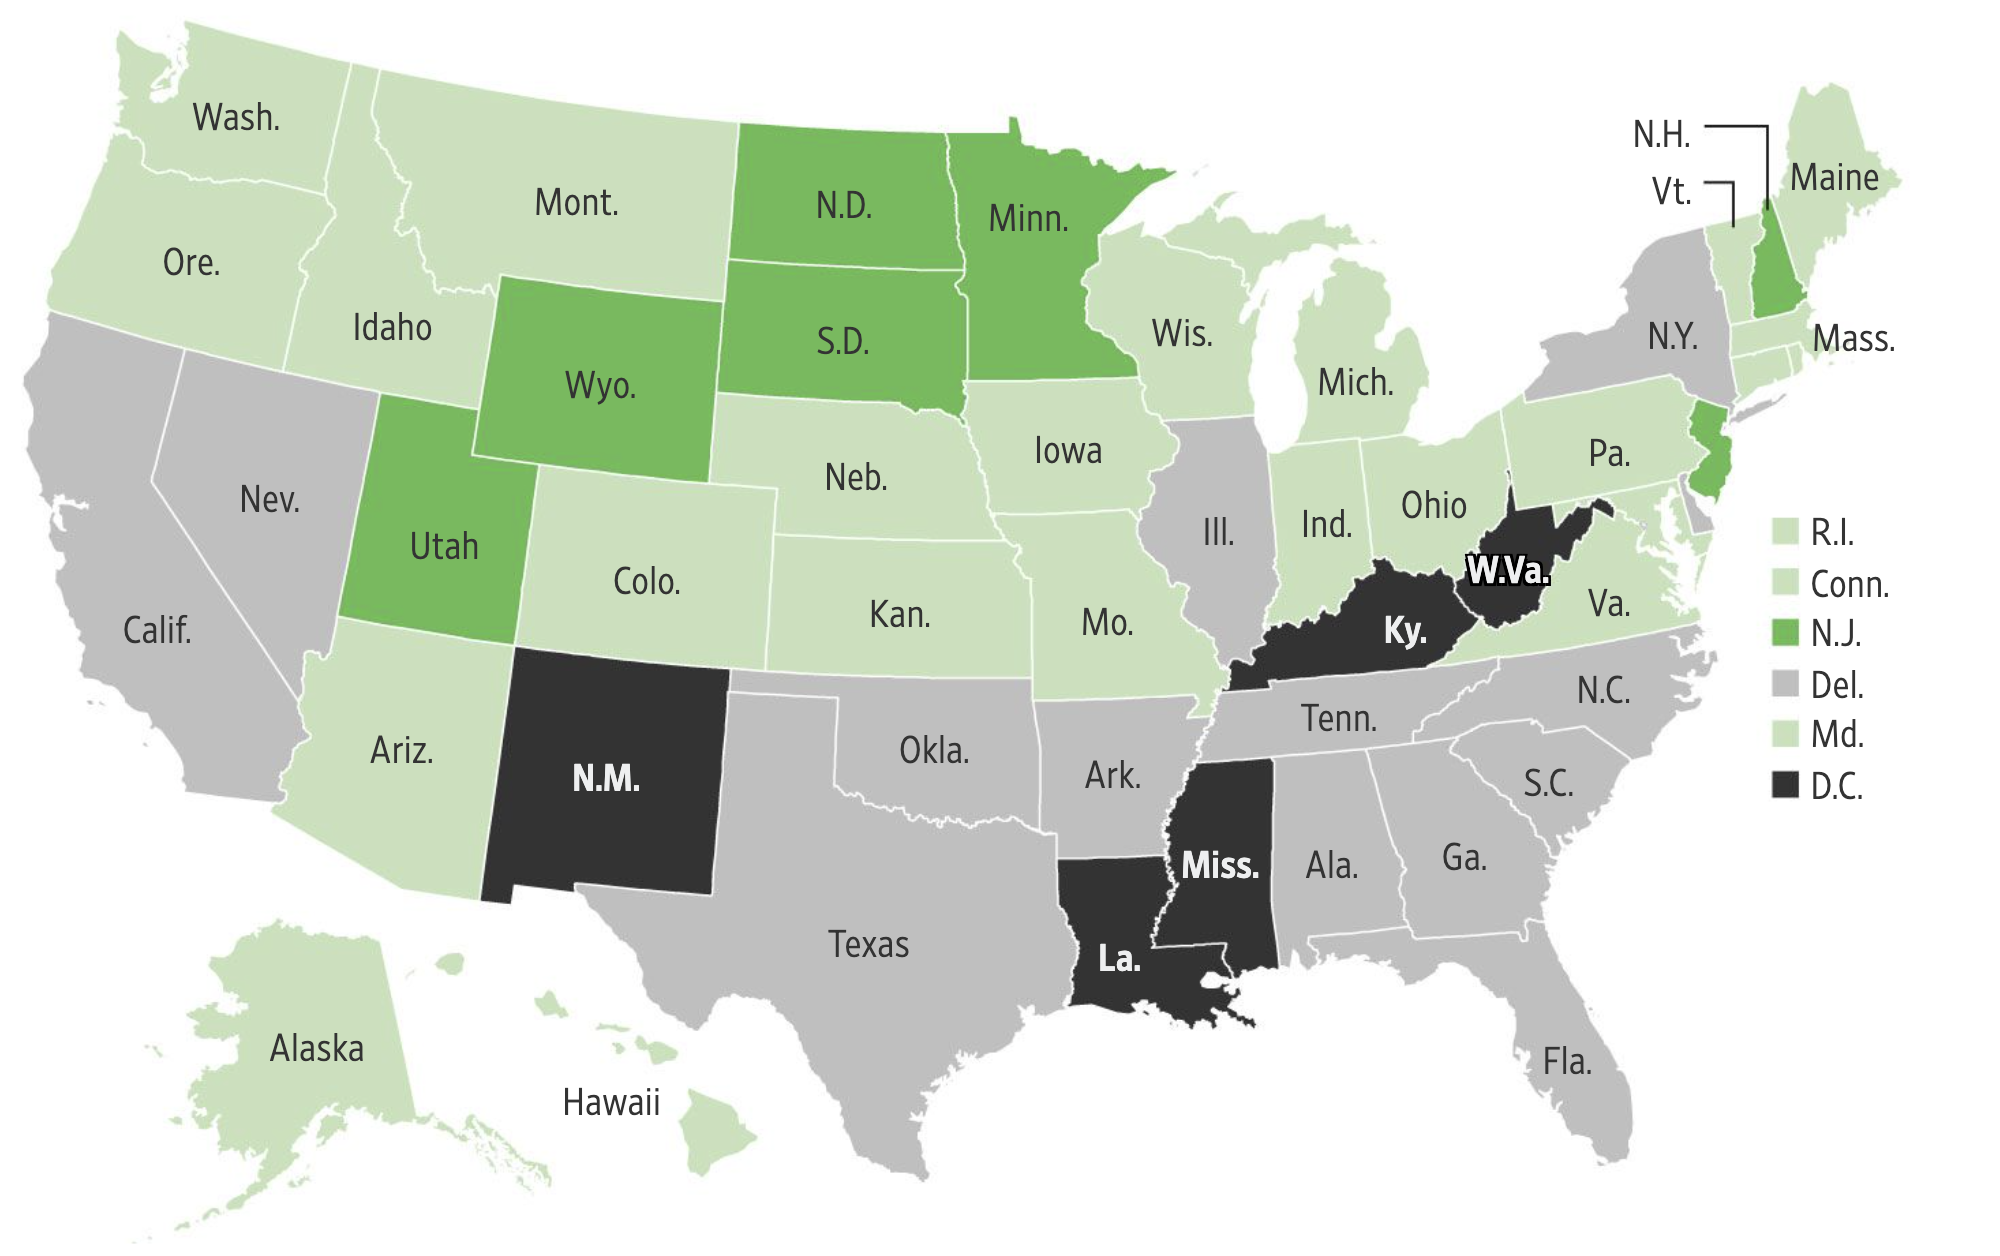 У какого процента студентов в разных штатах США нет надежного подключения к интернету: темно⁠-⁠зеленые штаты — менее 15%, светло-зеленые — 15⁠—⁠19%, серые — 20⁠—⁠24%, черные — 25% и более. Источник: Wall Street Journal